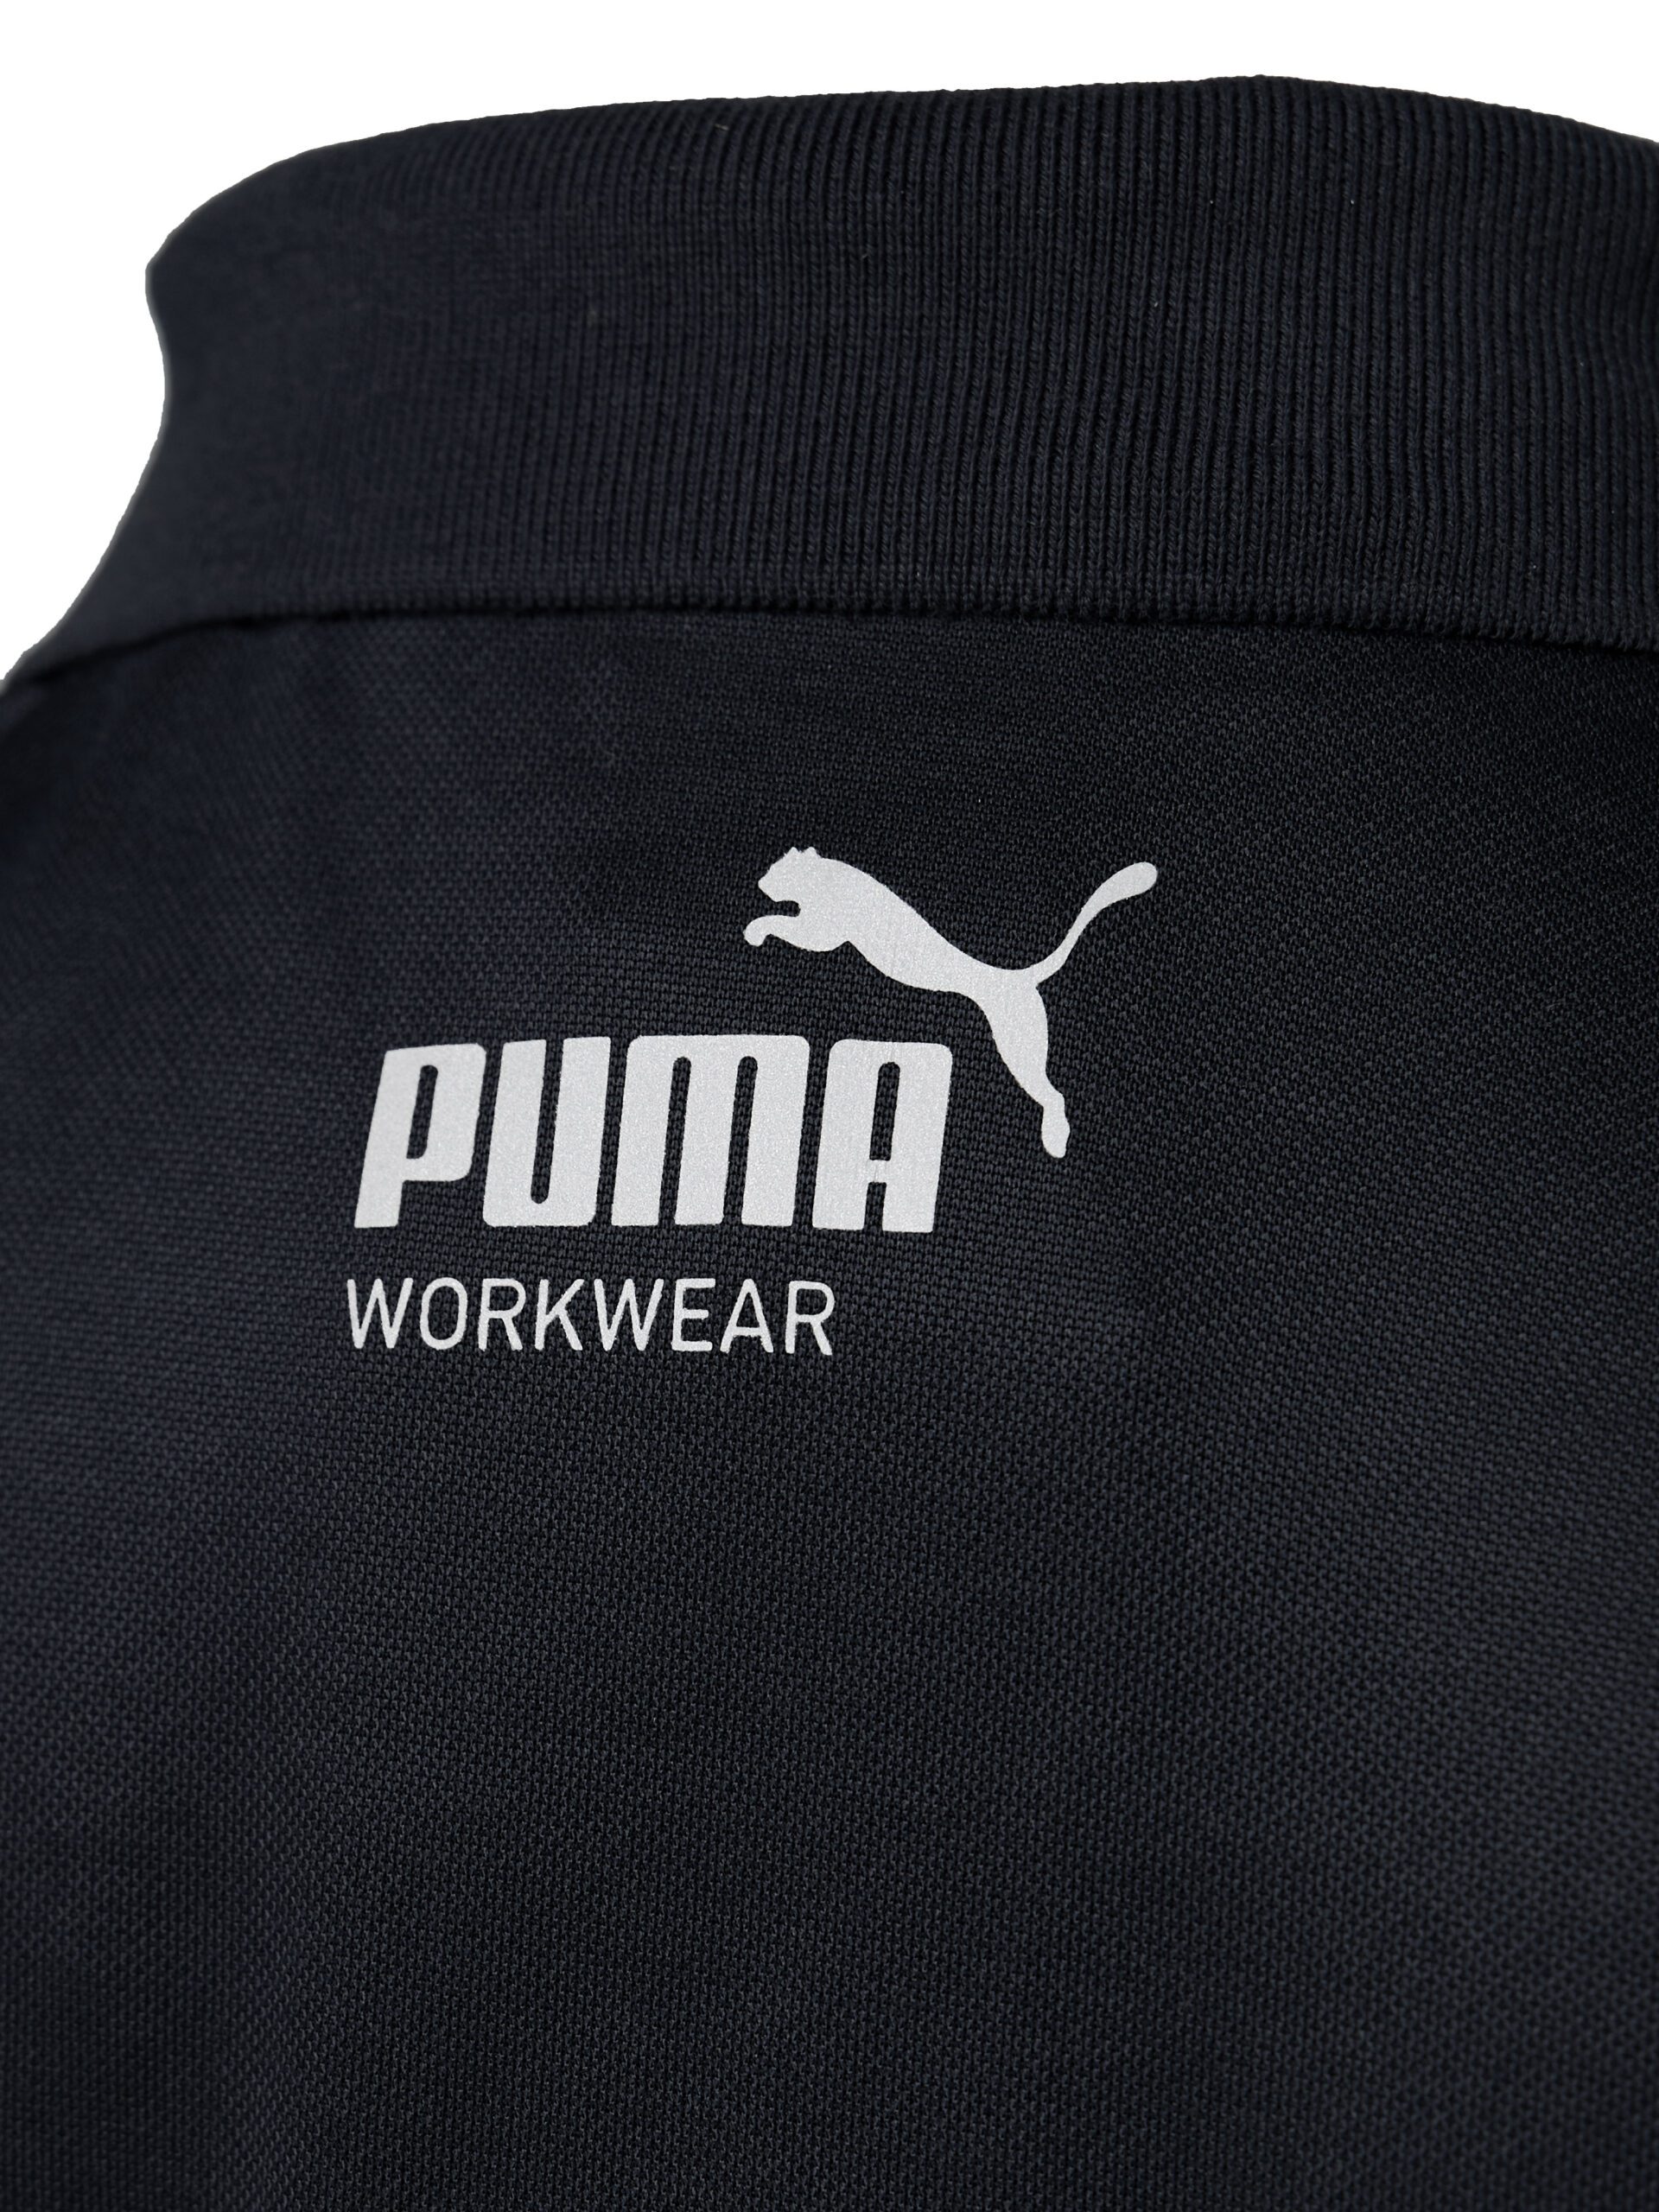 PUMA Workwear Essentials Men\'s Polo | Workwear Shirt PUMA